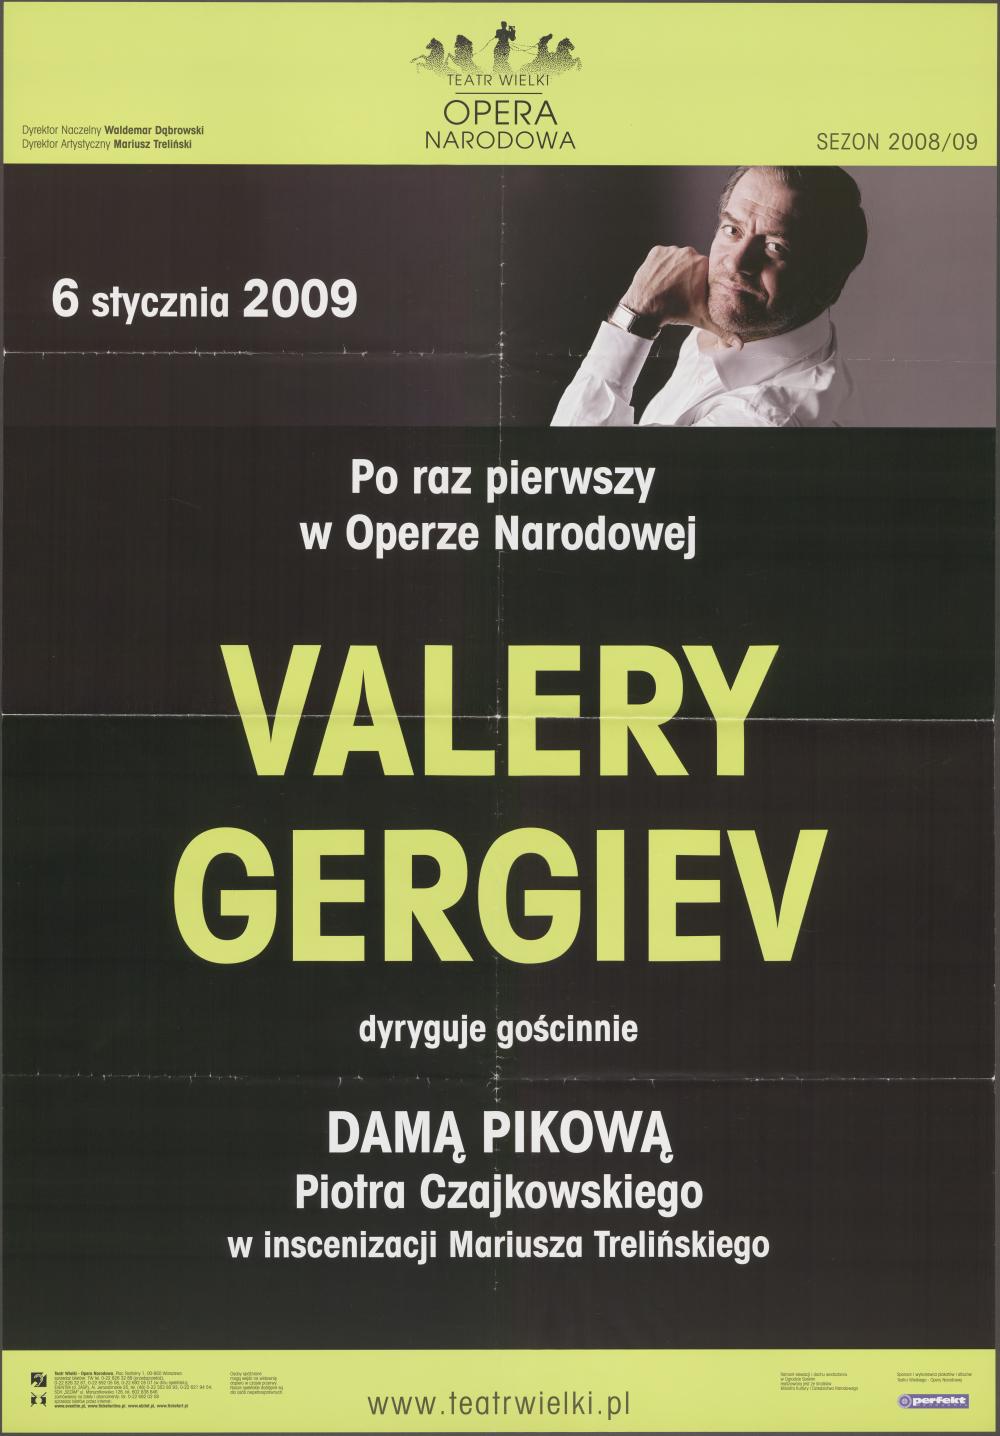 Afisz "Dama Pikowa" Piotr Czajkowski 26-01-2009 Dyryguje gościnnie Valery Gergiev